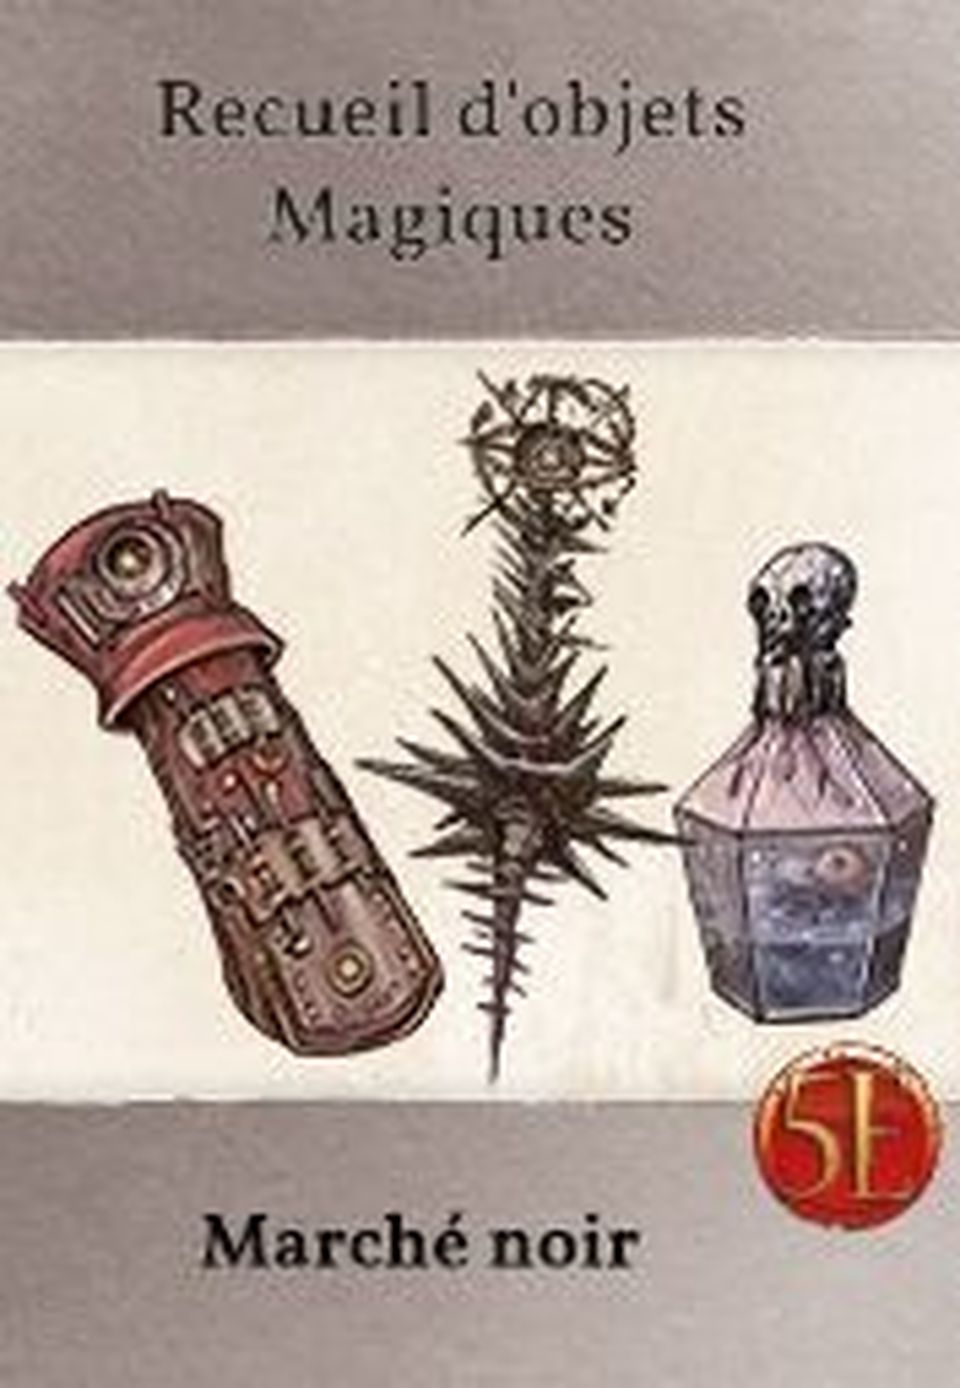 Recueil d'objets magiques : Marché noir image